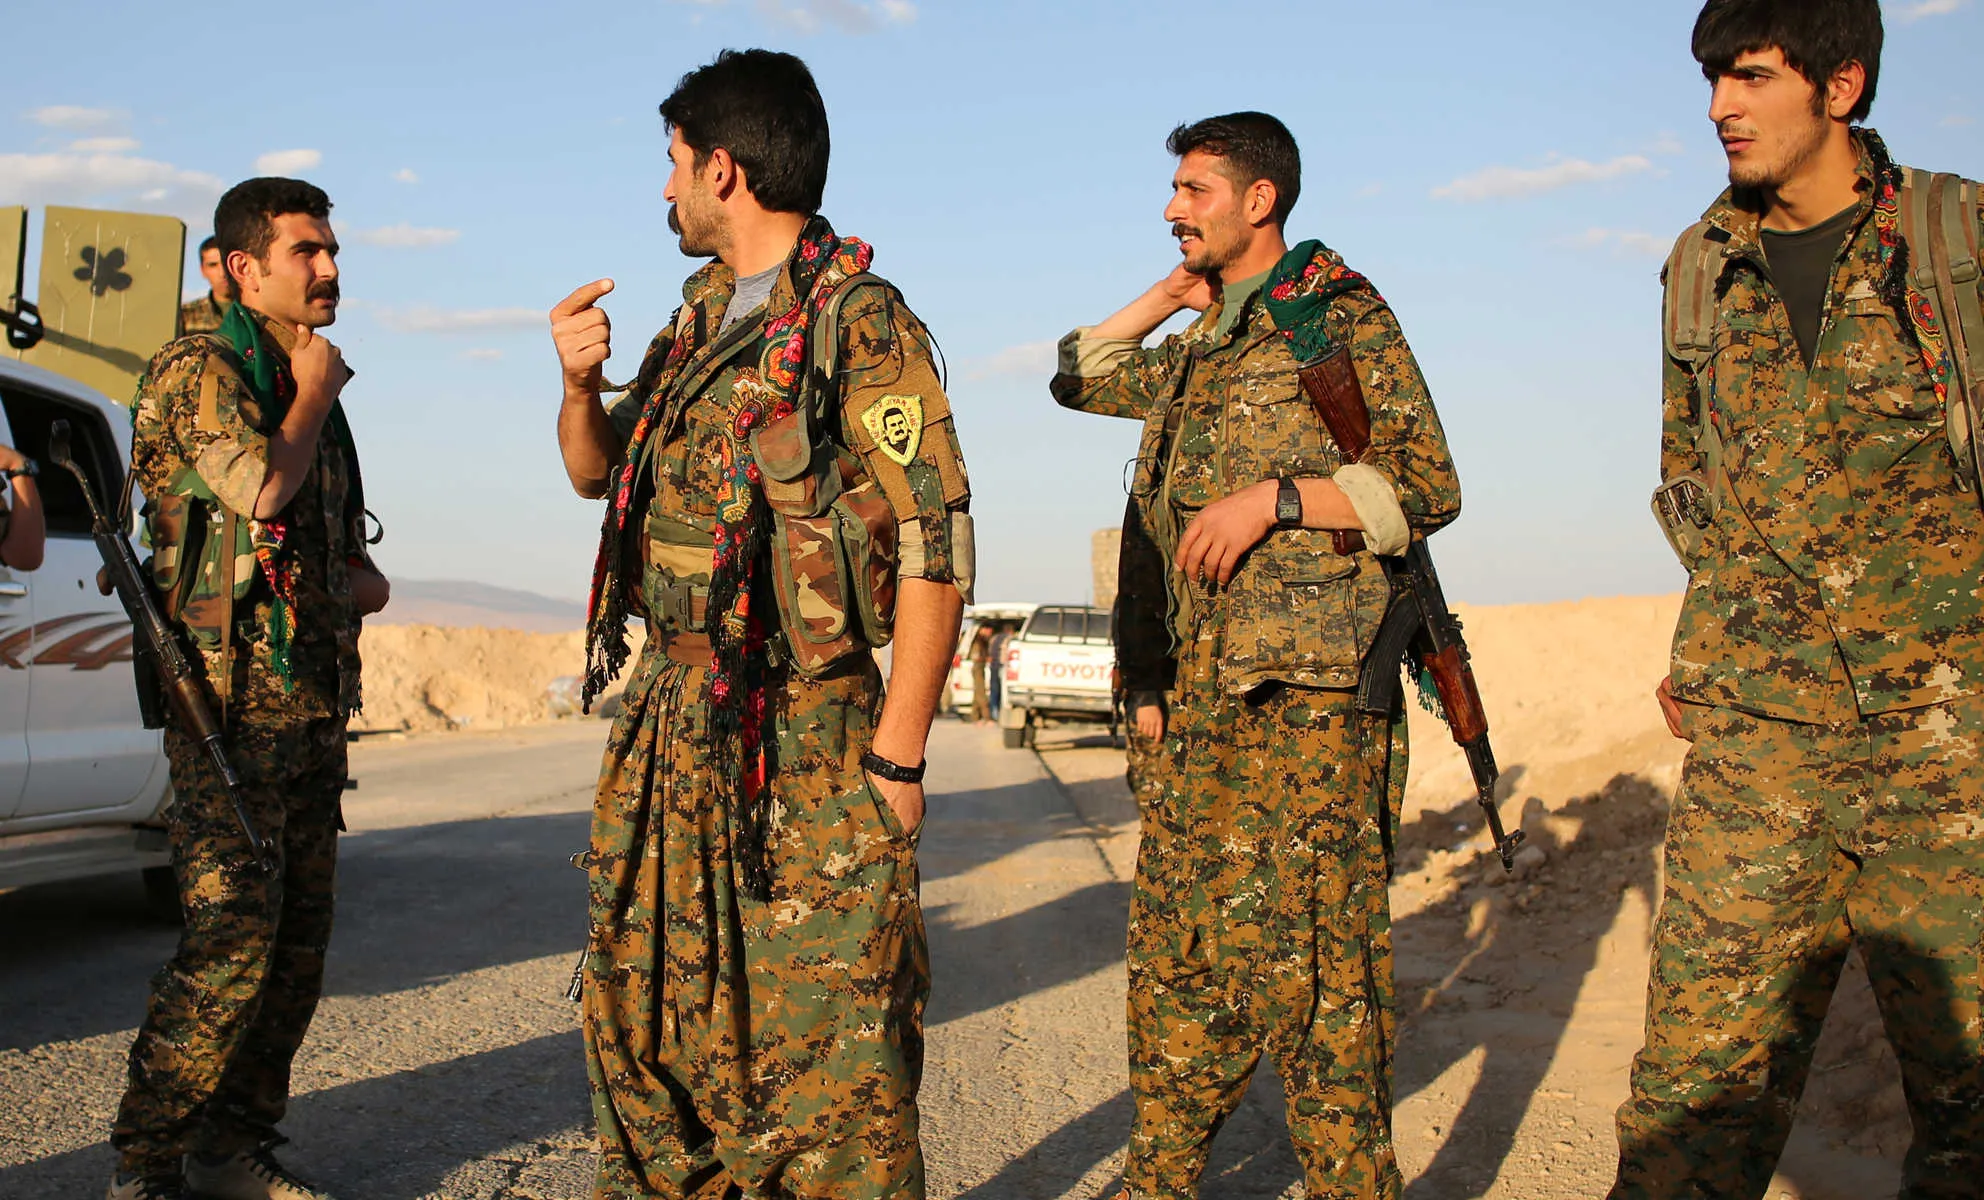 سياسي كردي يُحمل "ب ك ك" مسؤولية الهجرة الجنونية للشباب الكرد من سوريا